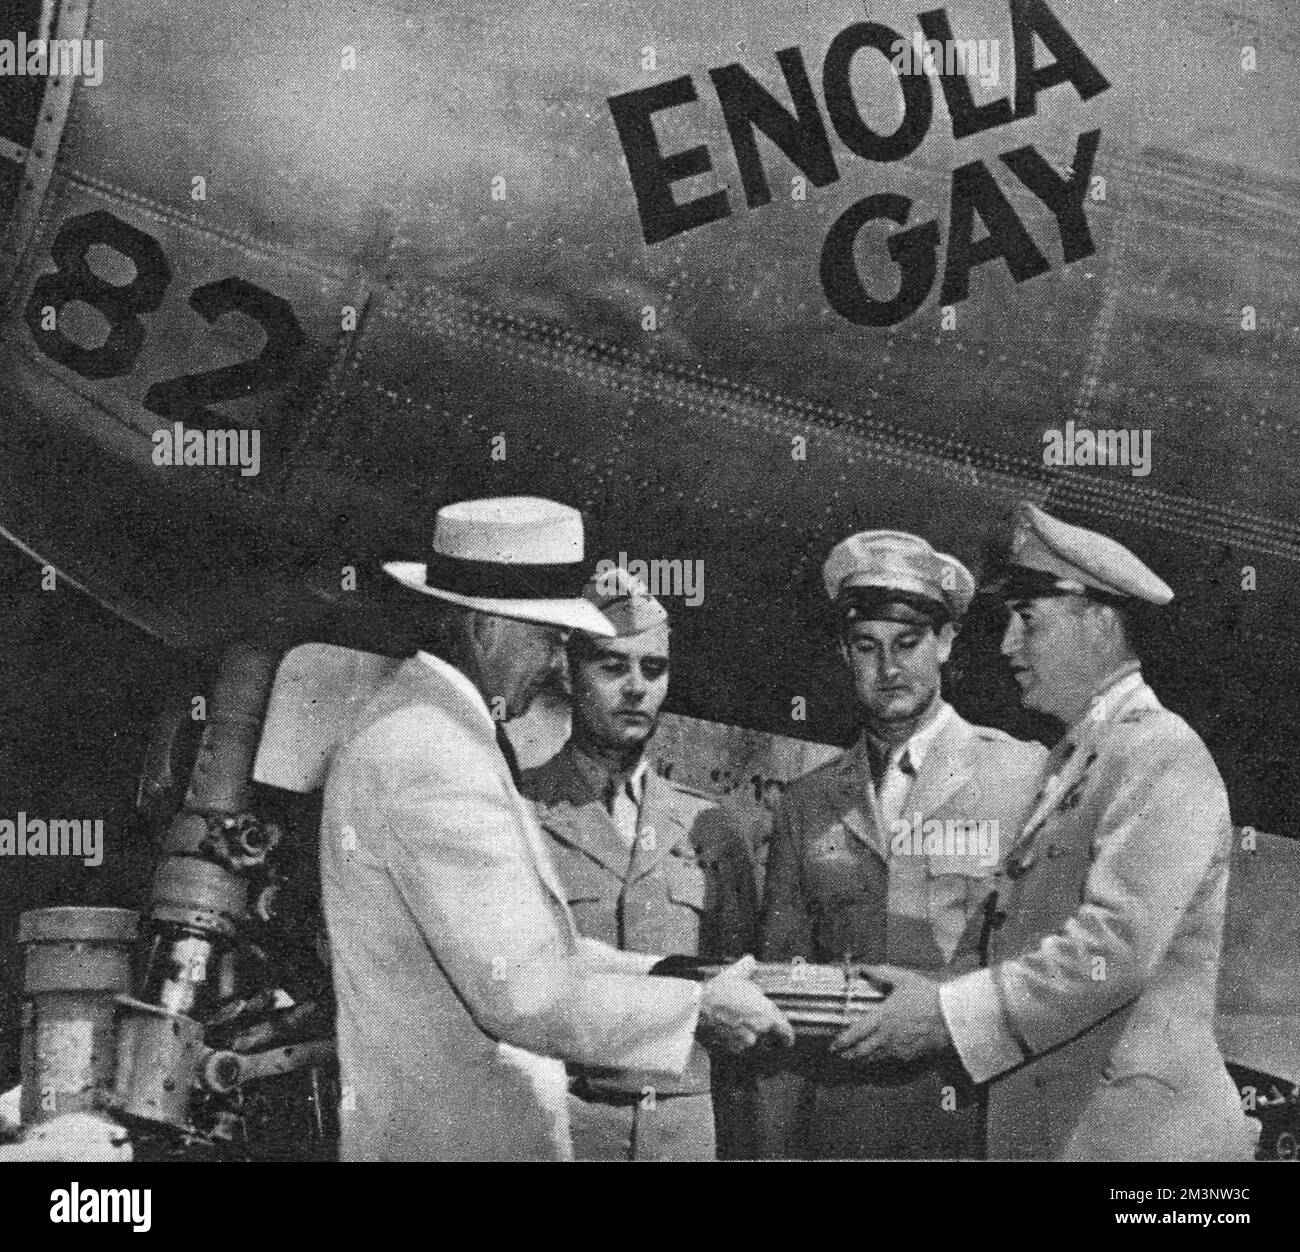 Le bombardier superforteresse Enola gay, le premier avion à transporter la bombe atomique en guerre quand il a lâché la bombe « Little Boy » au-dessus d'Hiroshima, au Japon, au cours de la deuxième Guerre mondiale, en cours de présentation à la Smithsonian institution, à Washington. M. C Mittman (à gauche) reçoit le journal du major-général O'Donnell (à droite) avec (au centre, de l à r) le colonel Paul Tibbbbbets, le pilote, et le major Ferebee, le bombardier, de la mission. Date: 1949 Banque D'Images